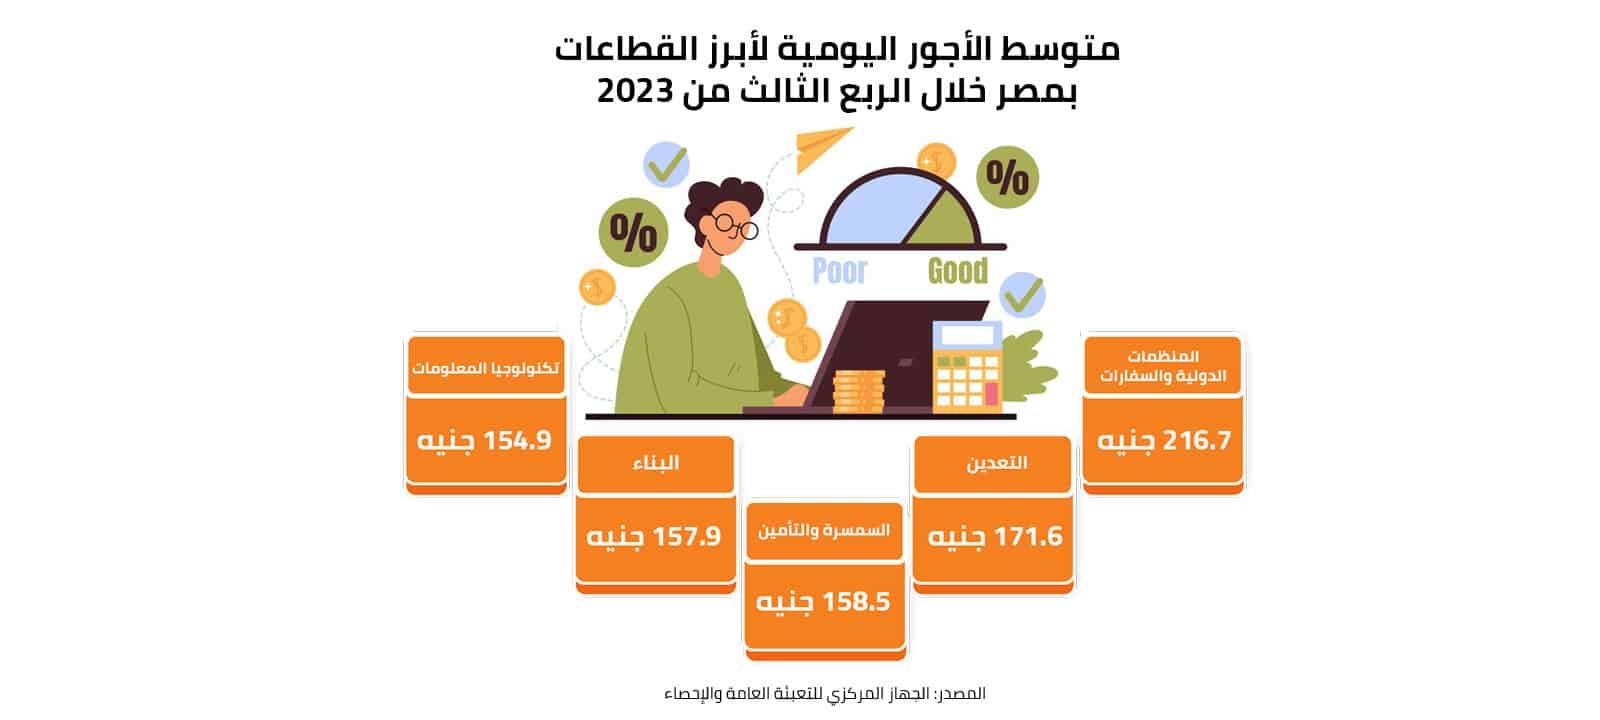 متوسط الأجور اليومية لأبرز القطاعات بمصر خلال الربع الثالث من 2023 